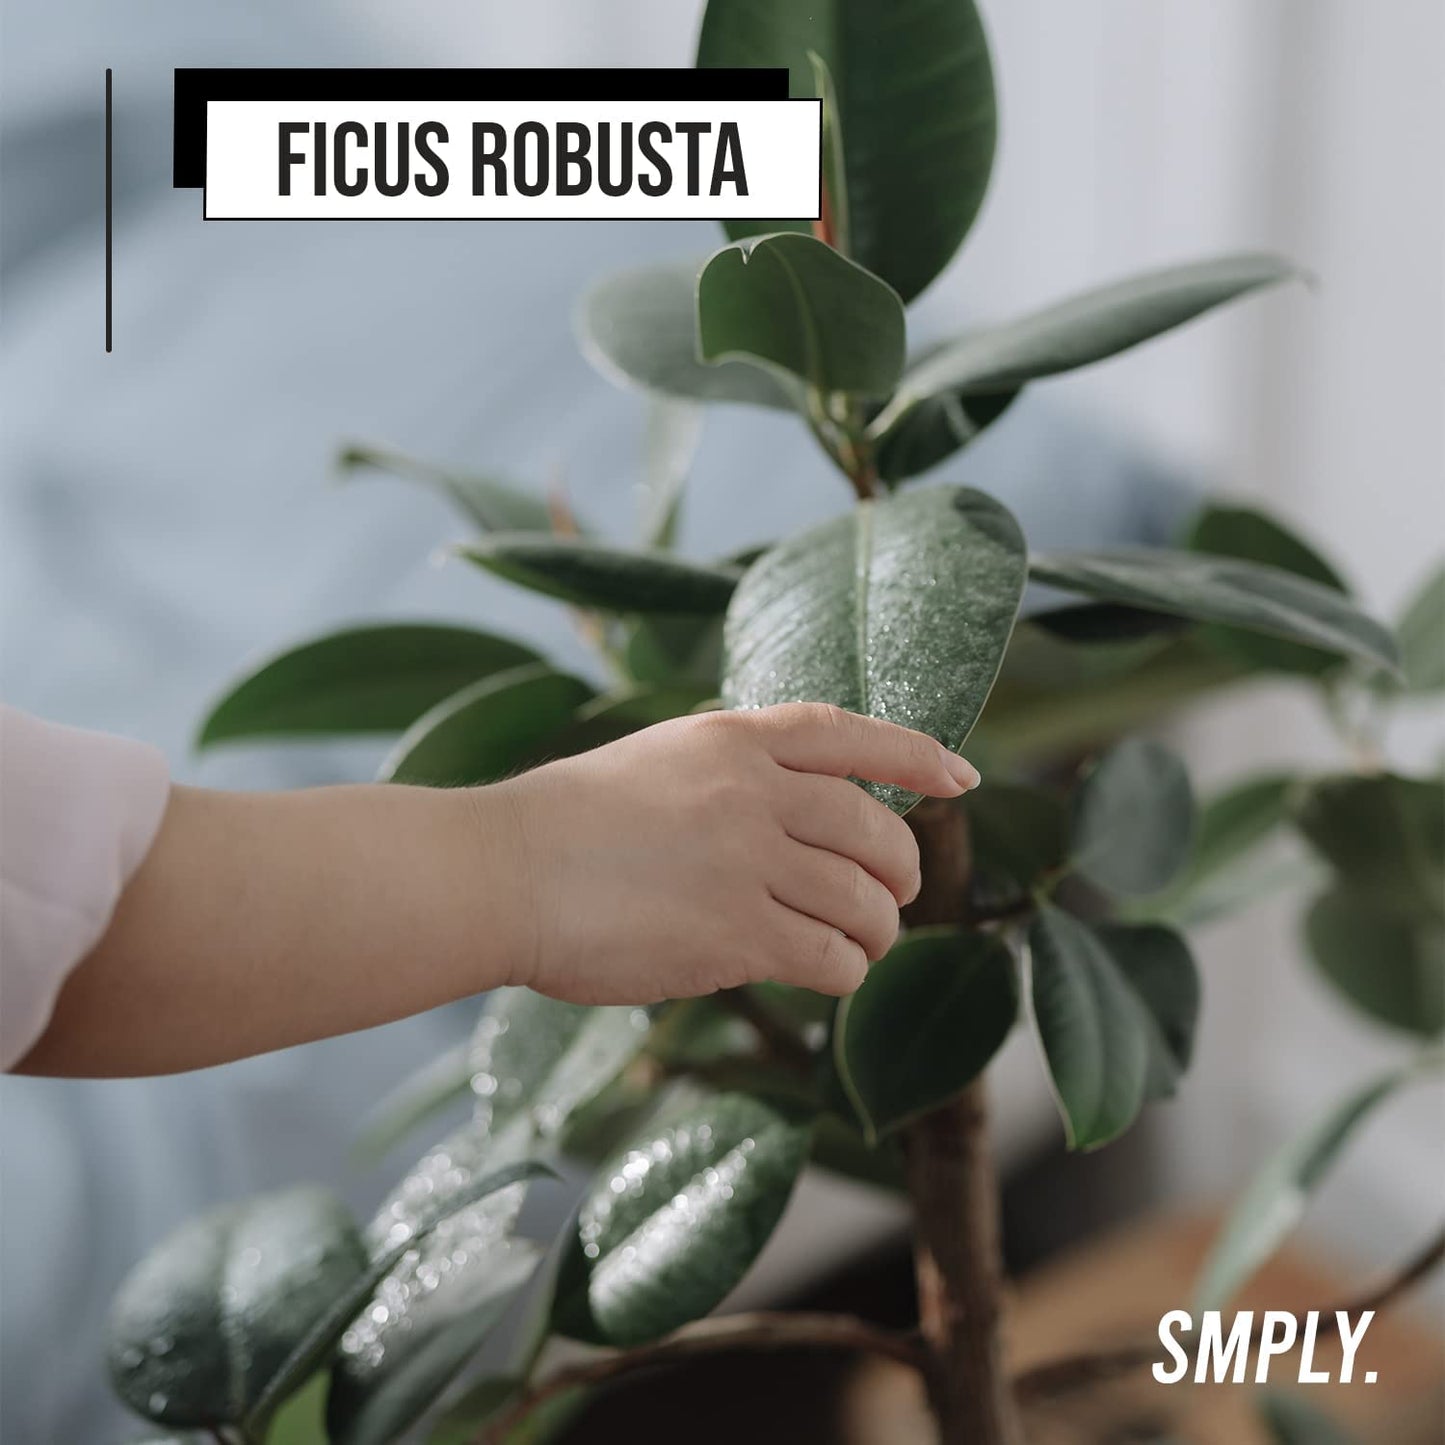 Ficus Robusta planta muy decorativa de brillantes y gruesas hojas smply hojas verdes.